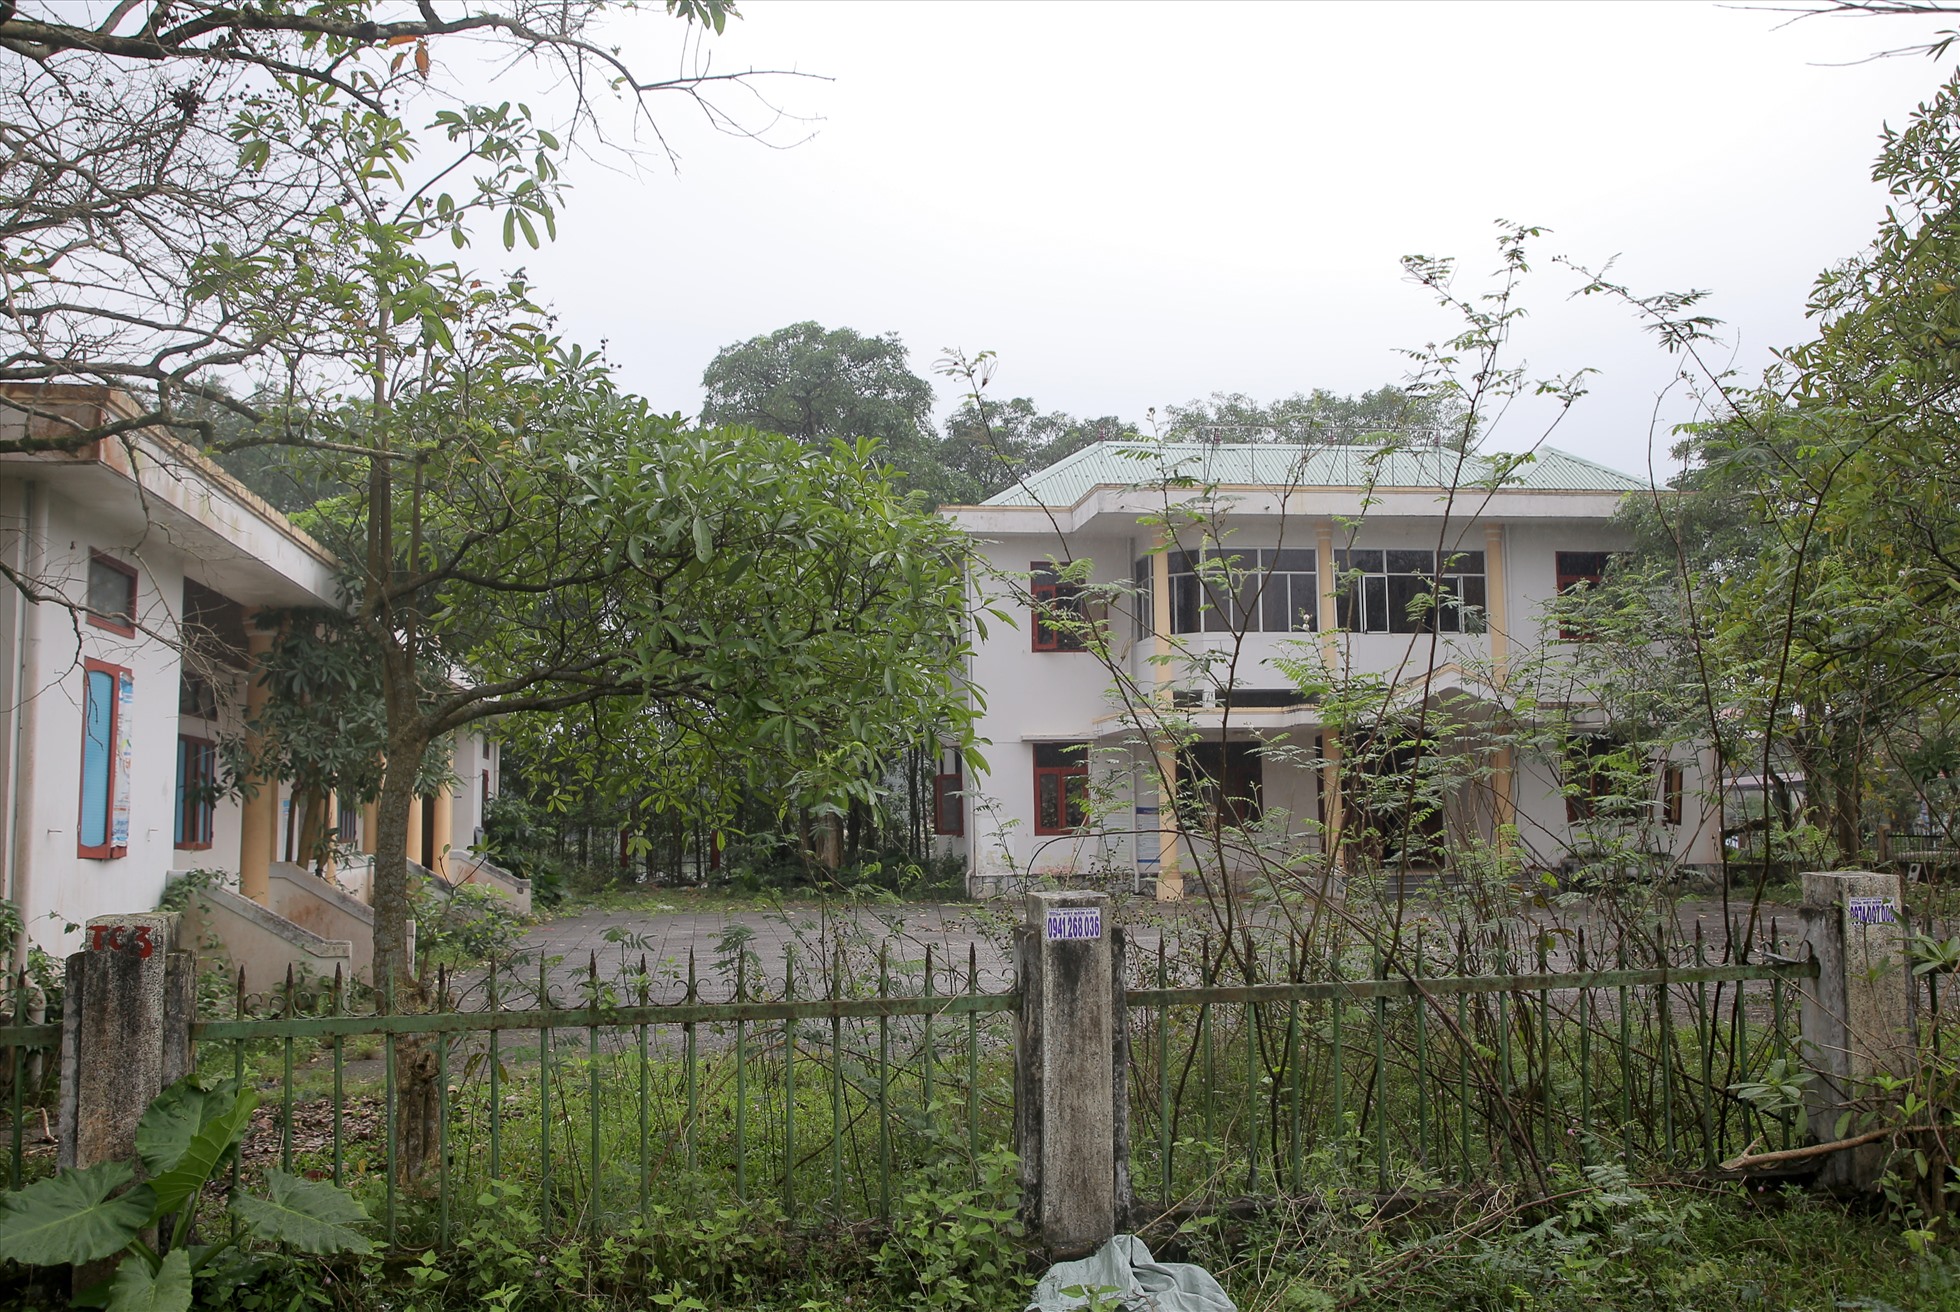 Kế tiếp trụ sở cơ quan Thanh tra – Tư pháp, là Nhà khách UBND huyện Triệu Phong. Nơi này cửa ngõ mở toang, nhưng cũng không bóng người.